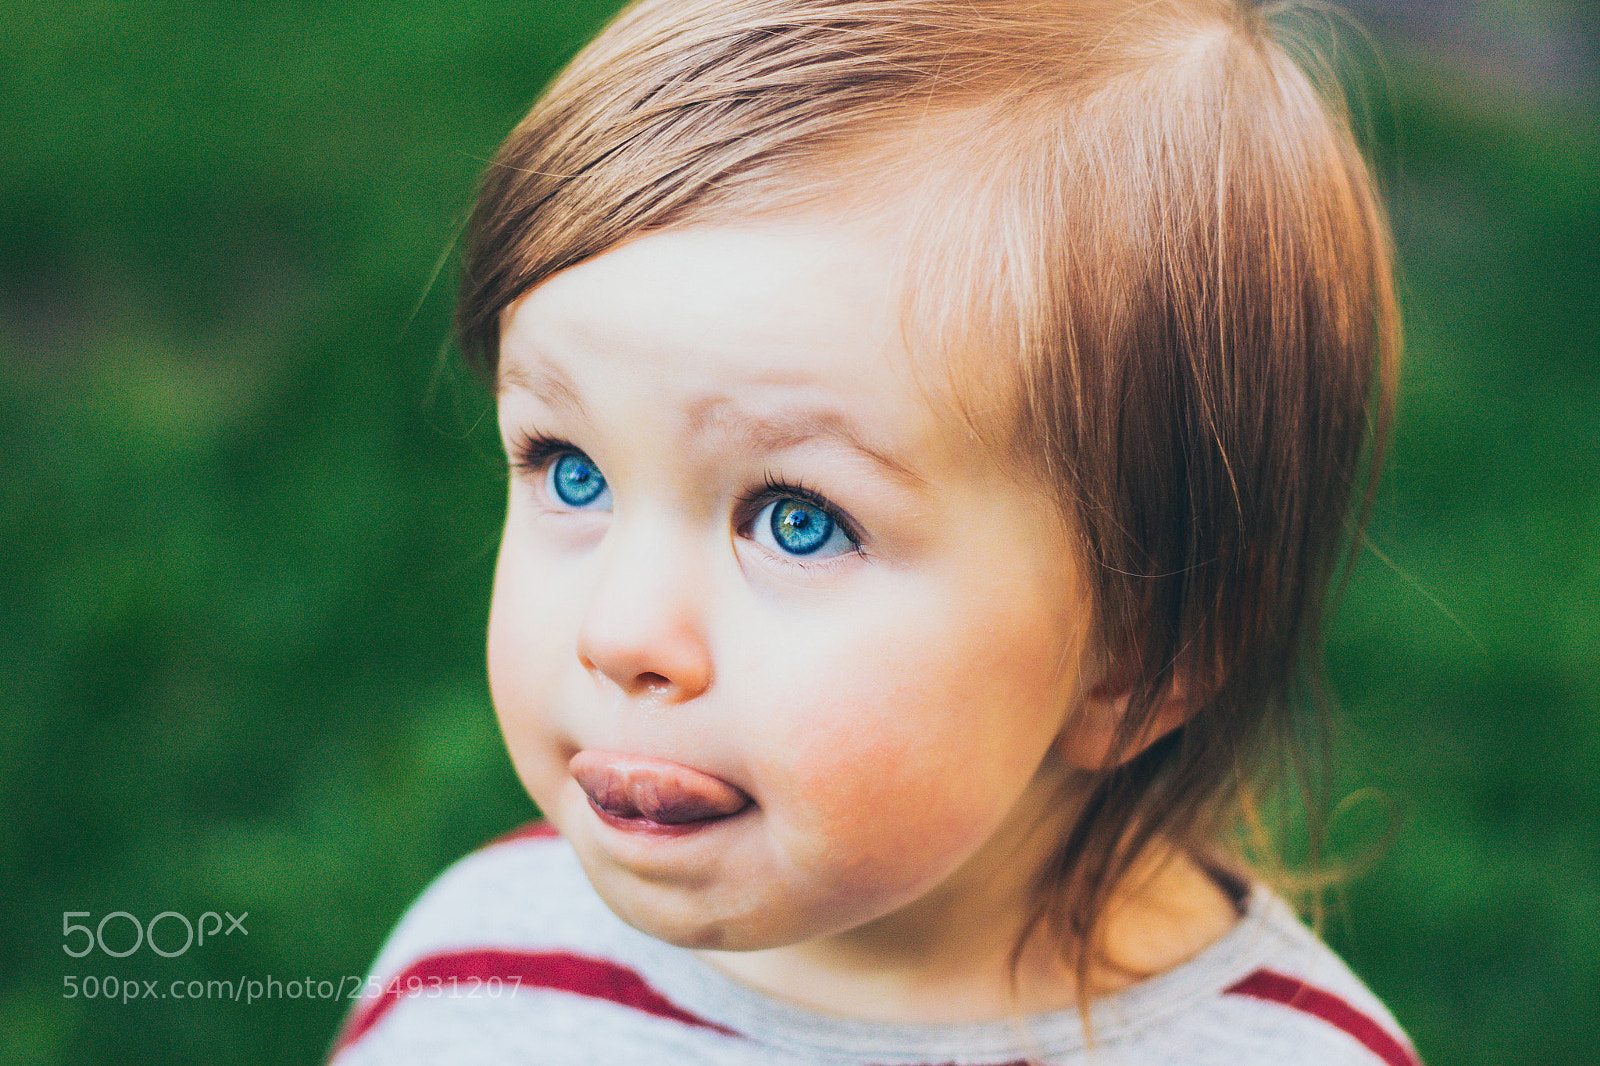 Canon EOS 100D (EOS Rebel SL1 / EOS Kiss X7) sample photo. Little toddler girl closeup photography